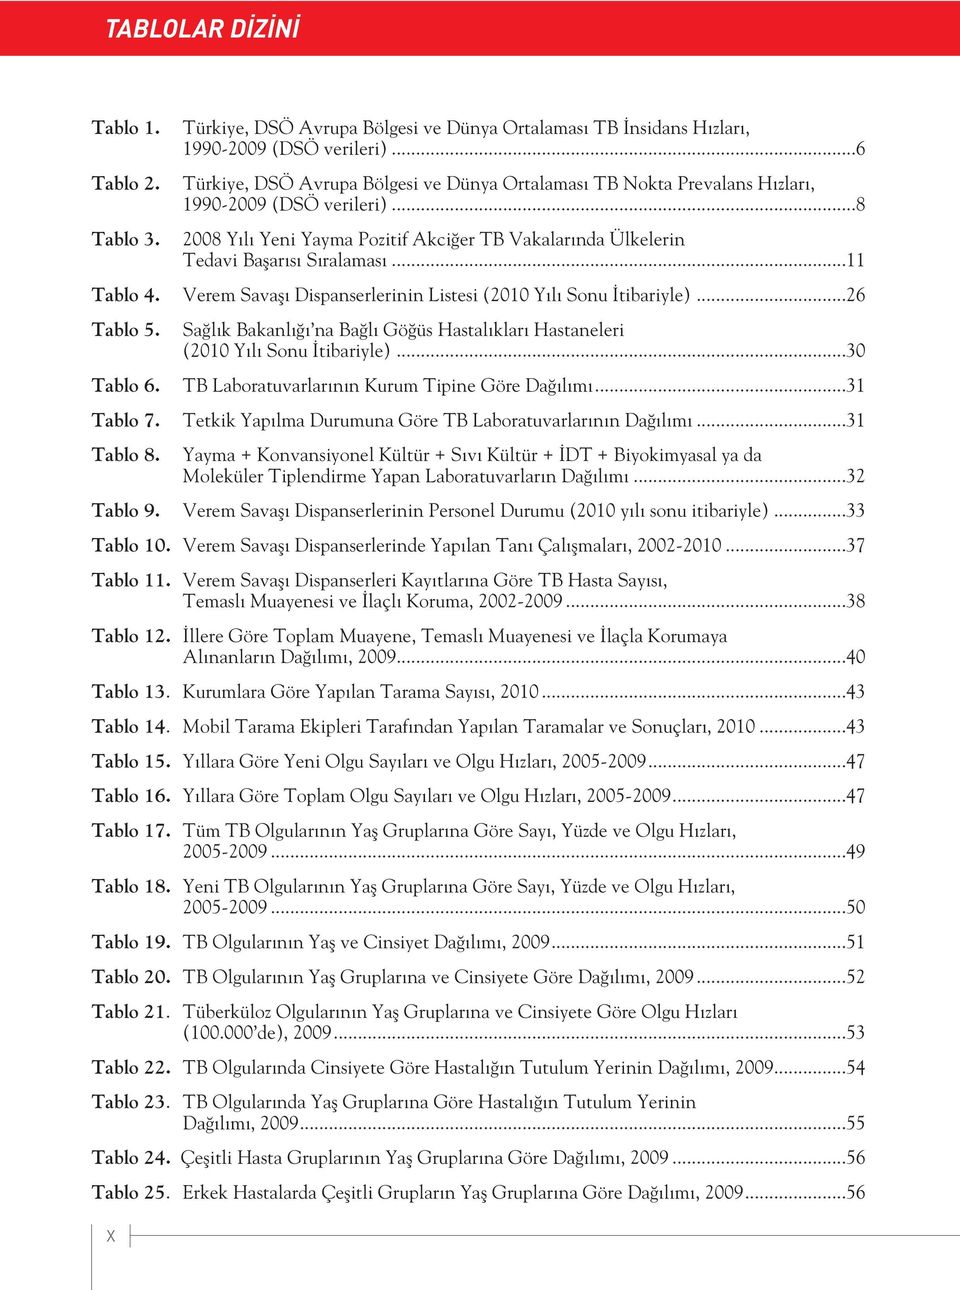 ..11 Tablo 4. Verem Savaşı Dispanserlerinin Listesi (2010 Yılı Sonu İtibariyle)...26 Tablo 5. Tablo 6. Tablo 7. Tablo 8.